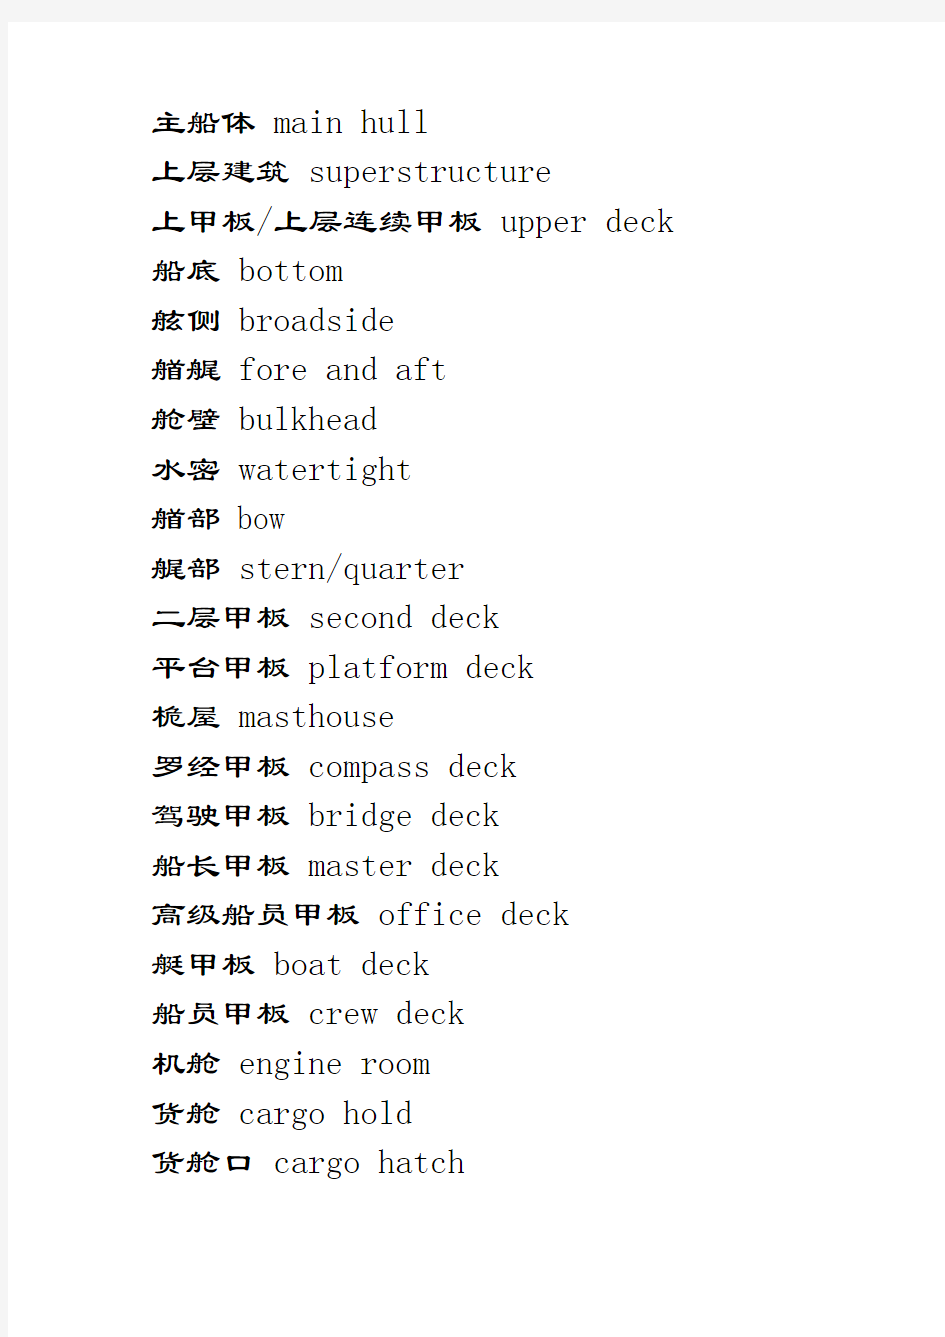 中英文对照船体结构用语